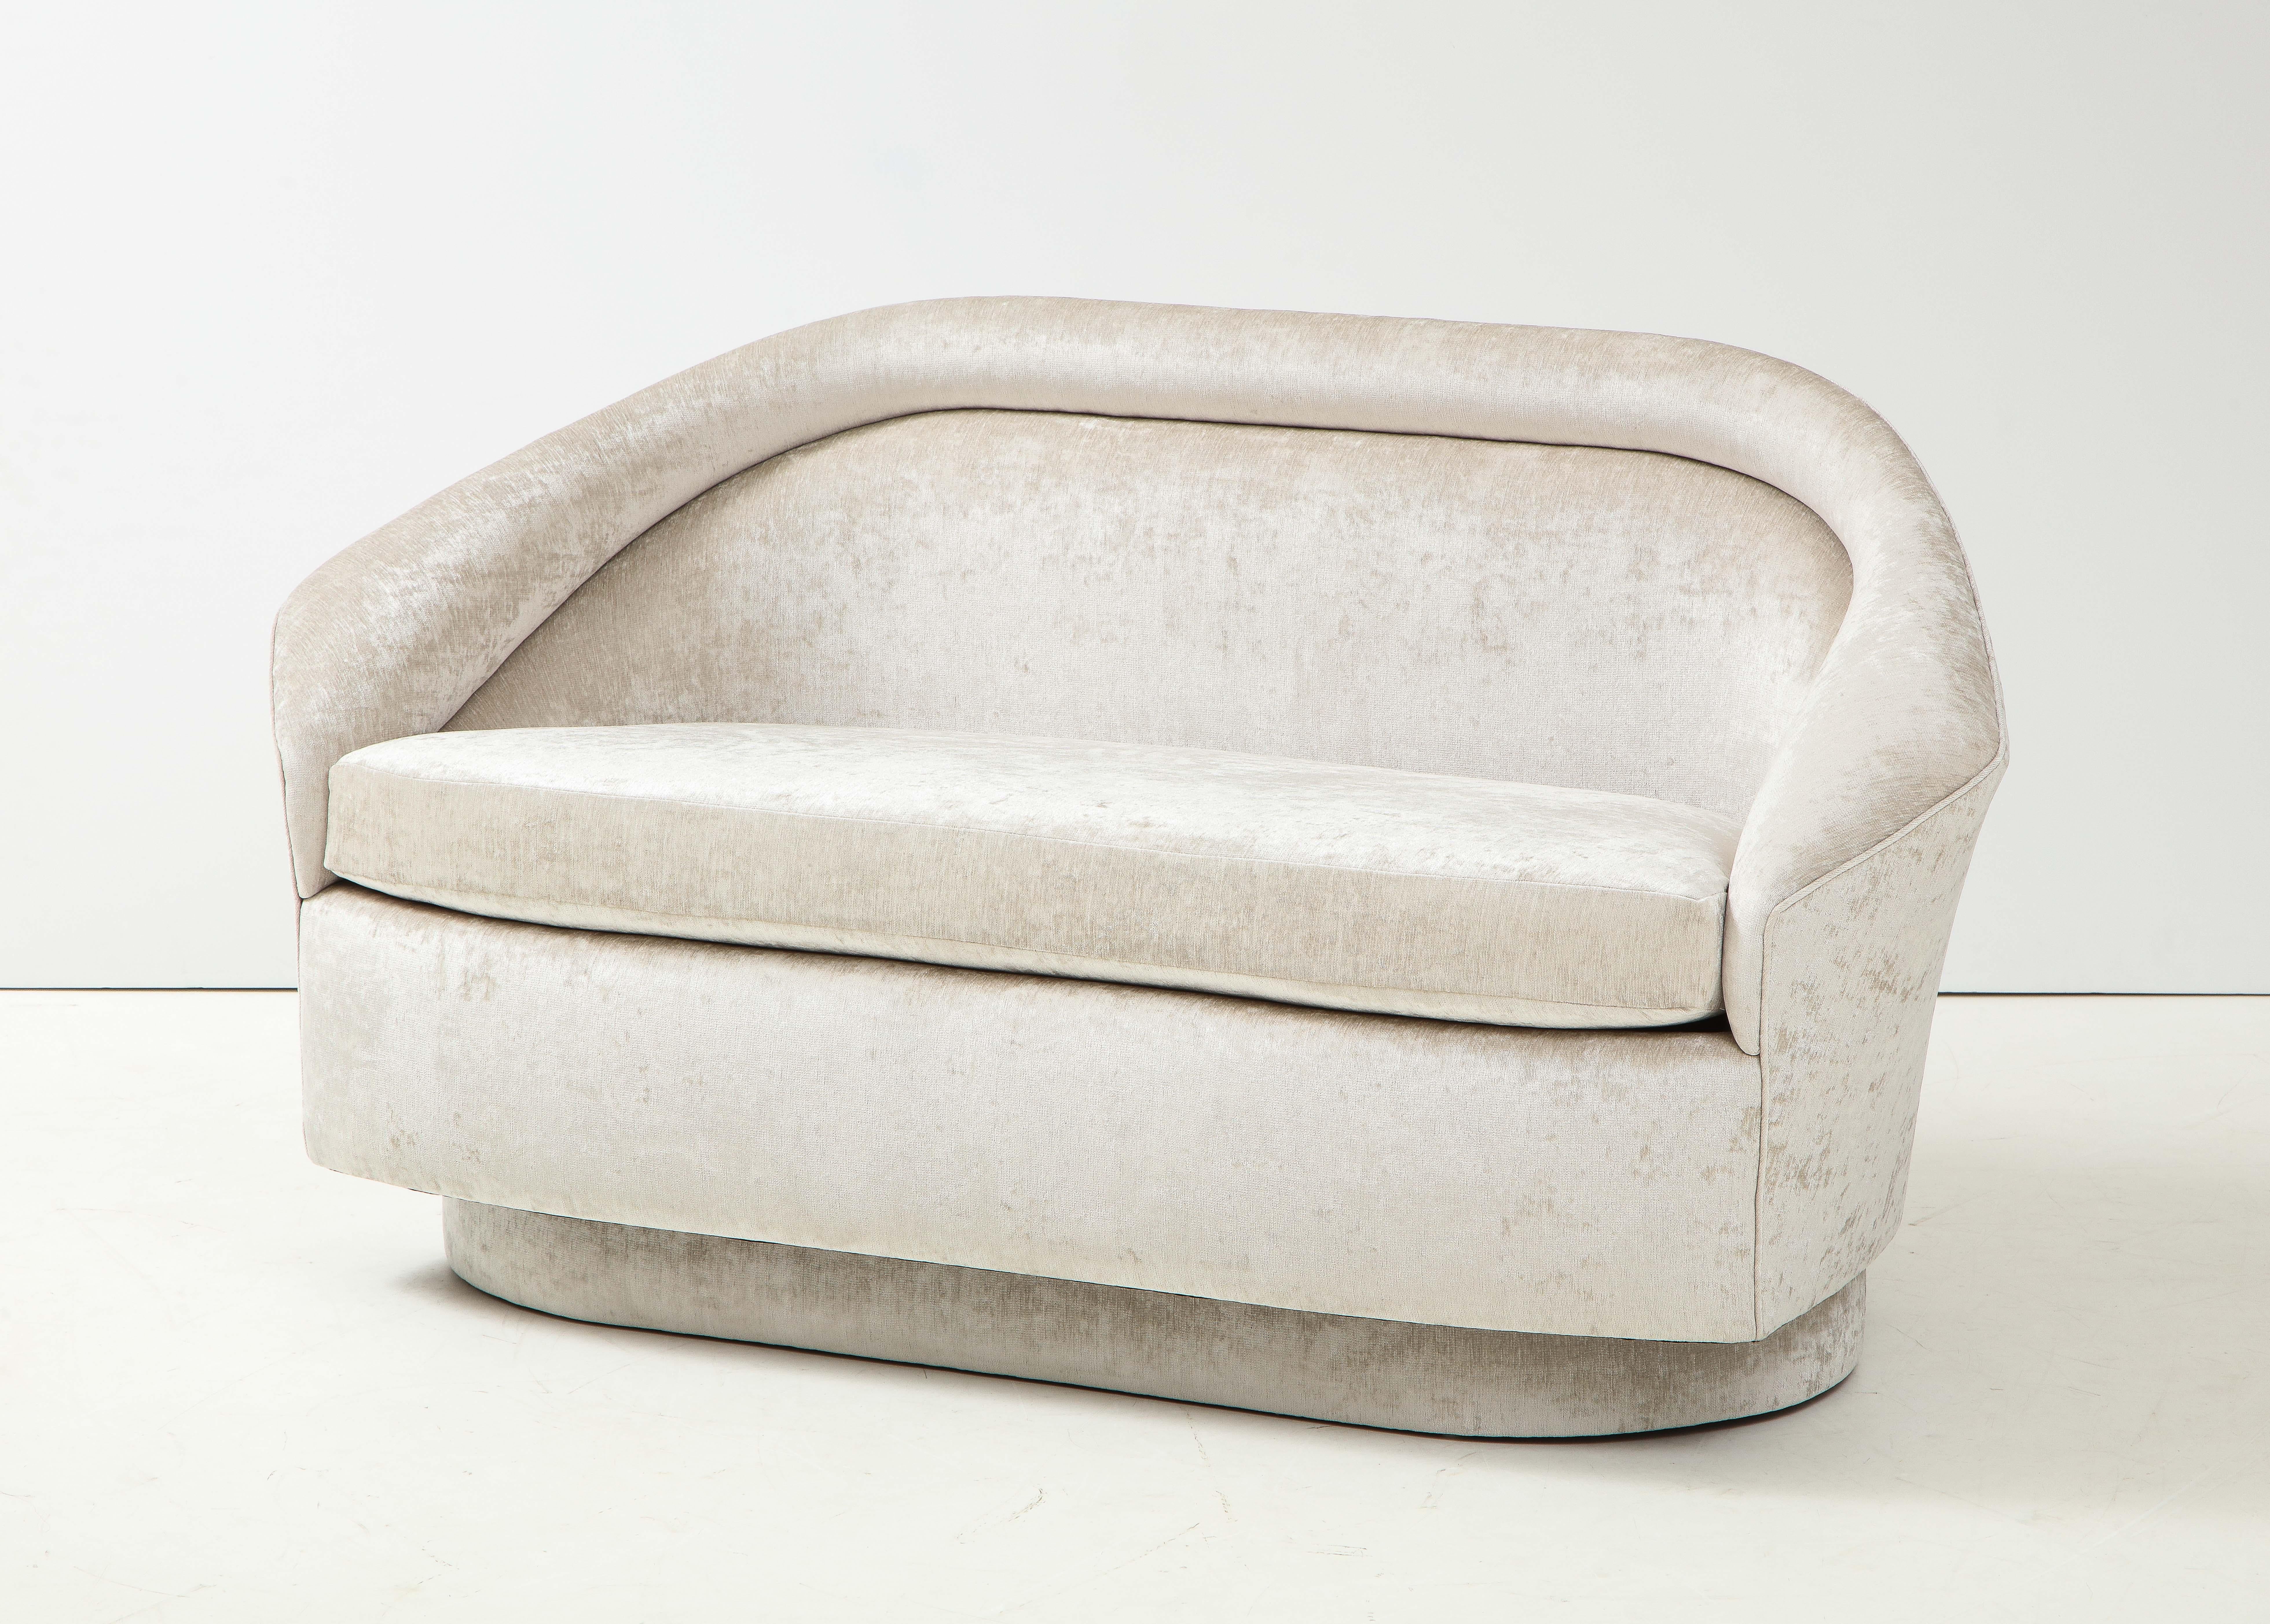 1970er Jahre Skulpturales Sofa von Adrian Pearsall.
Elegantes Sofa, das wunderschön mit einem luxuriösen, weichen Stoff gepolstert ist
Elfenbeinfarbener Chenille-Stoff.